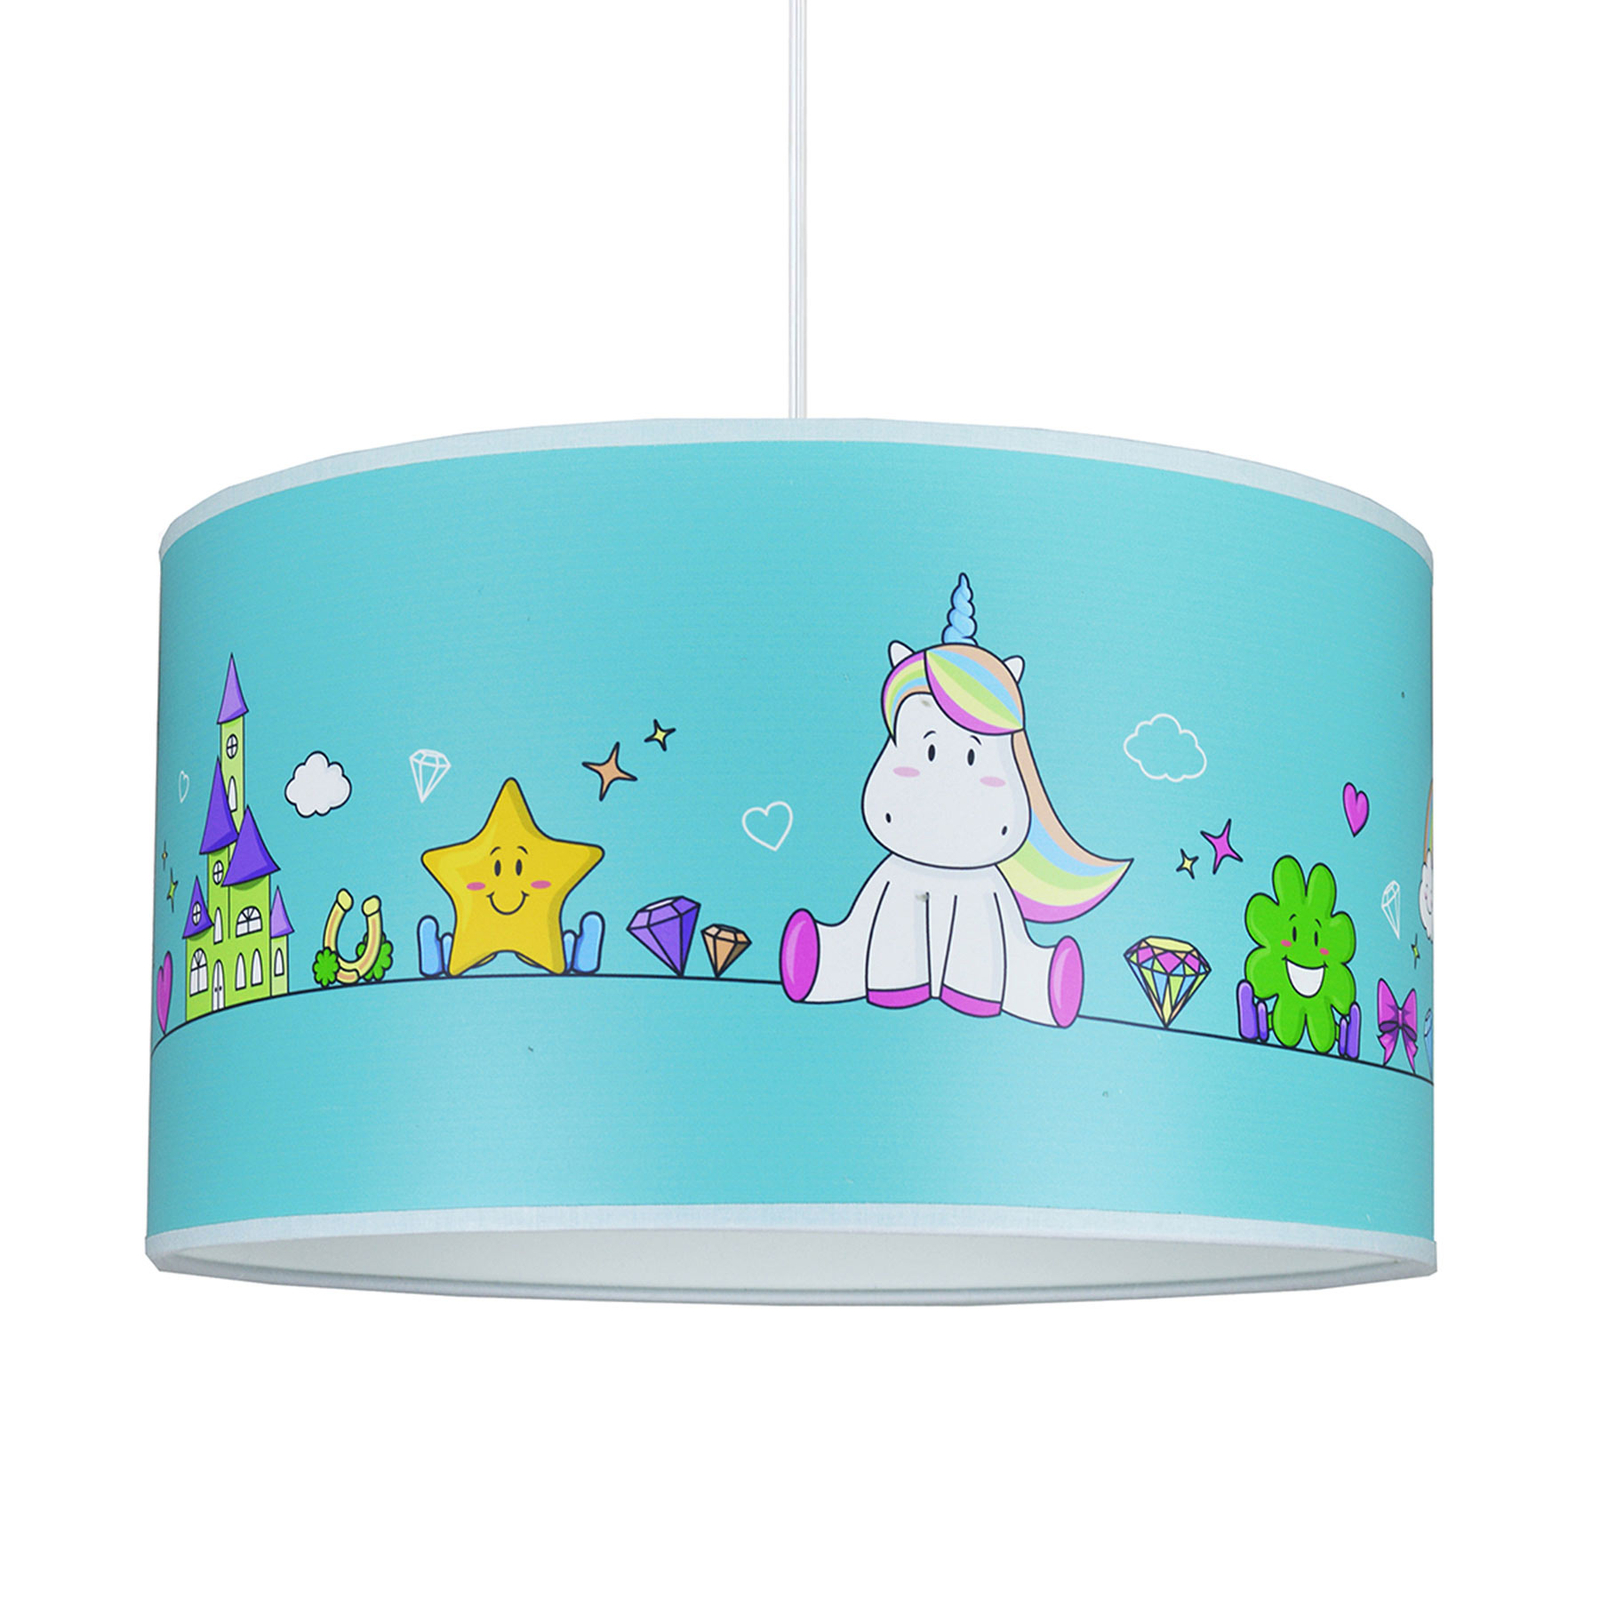 Hanglamp Unicorn, blauw met motieven